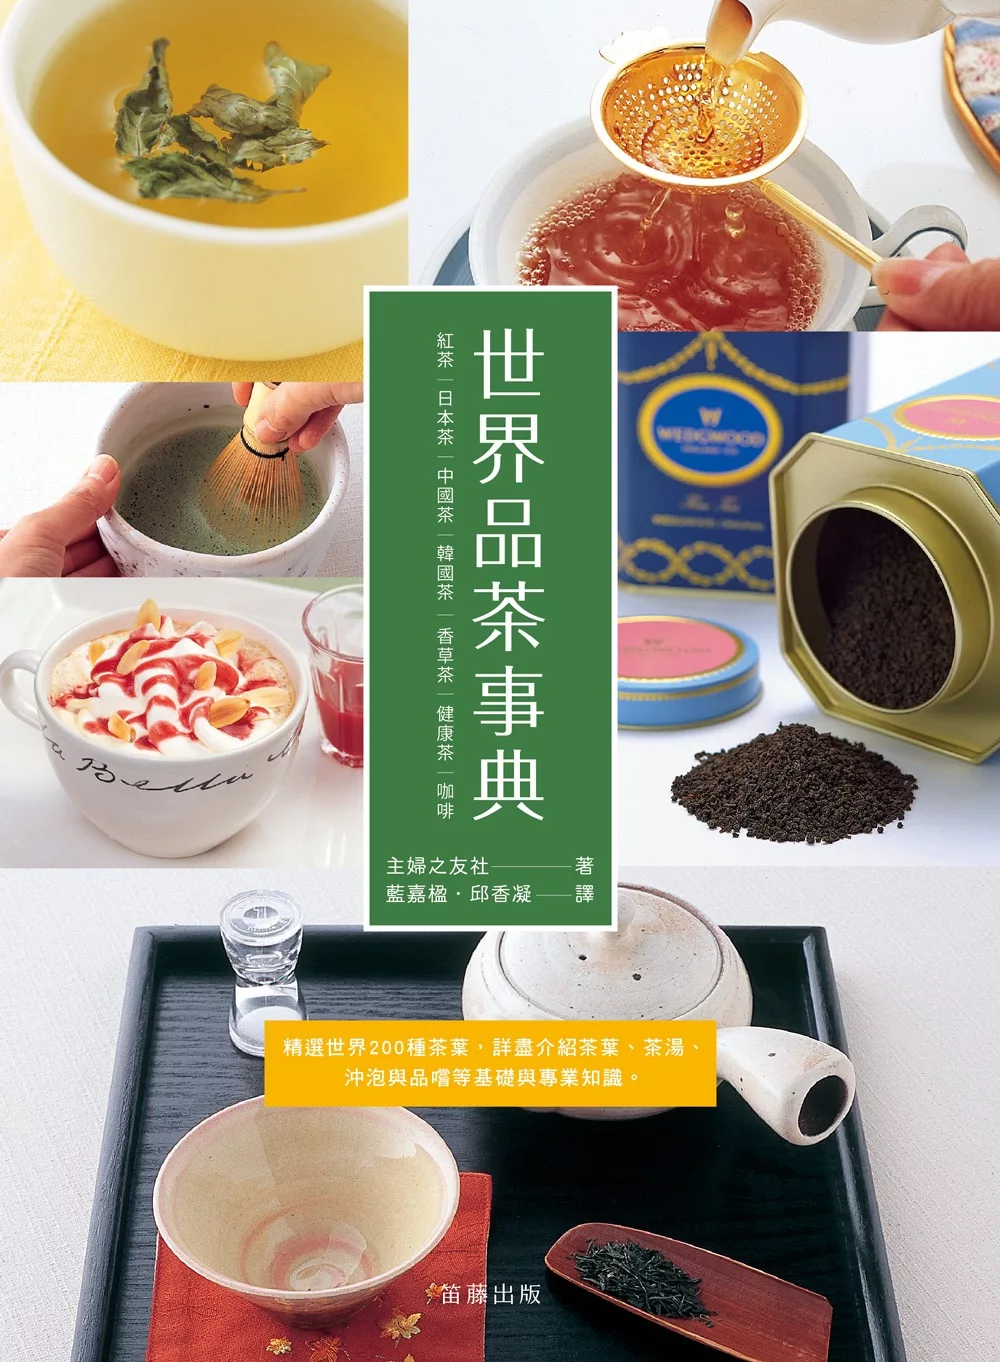 世界品茶事典：精選世界200種茶葉，詳盡介紹茶葉、茶湯、沖泡與品嚐等基礎與專業知識